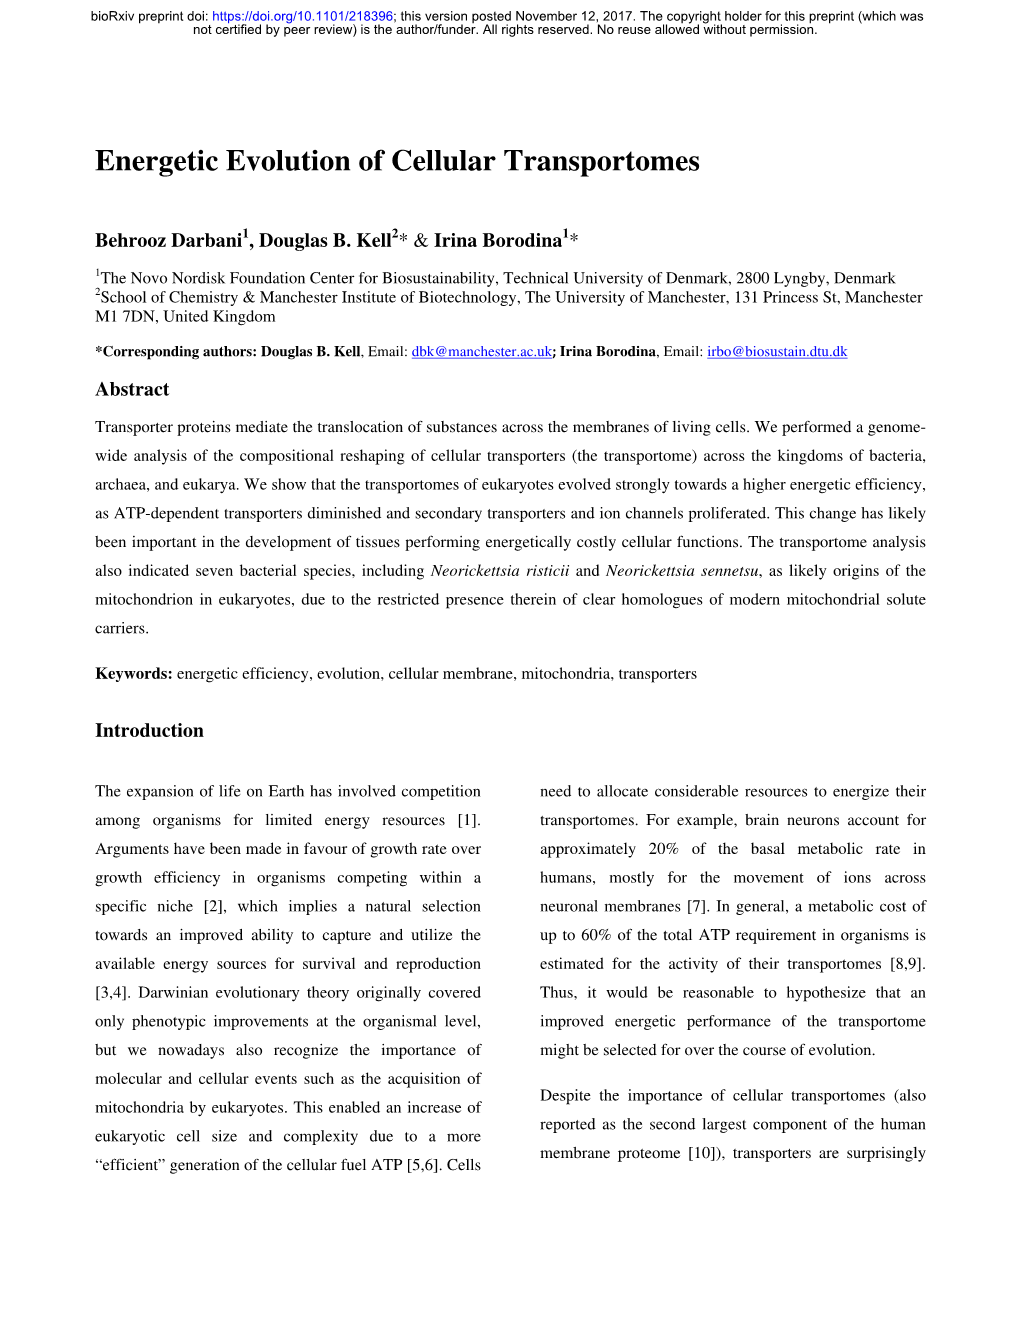 Energetic Evolution of Cellular Transportomes